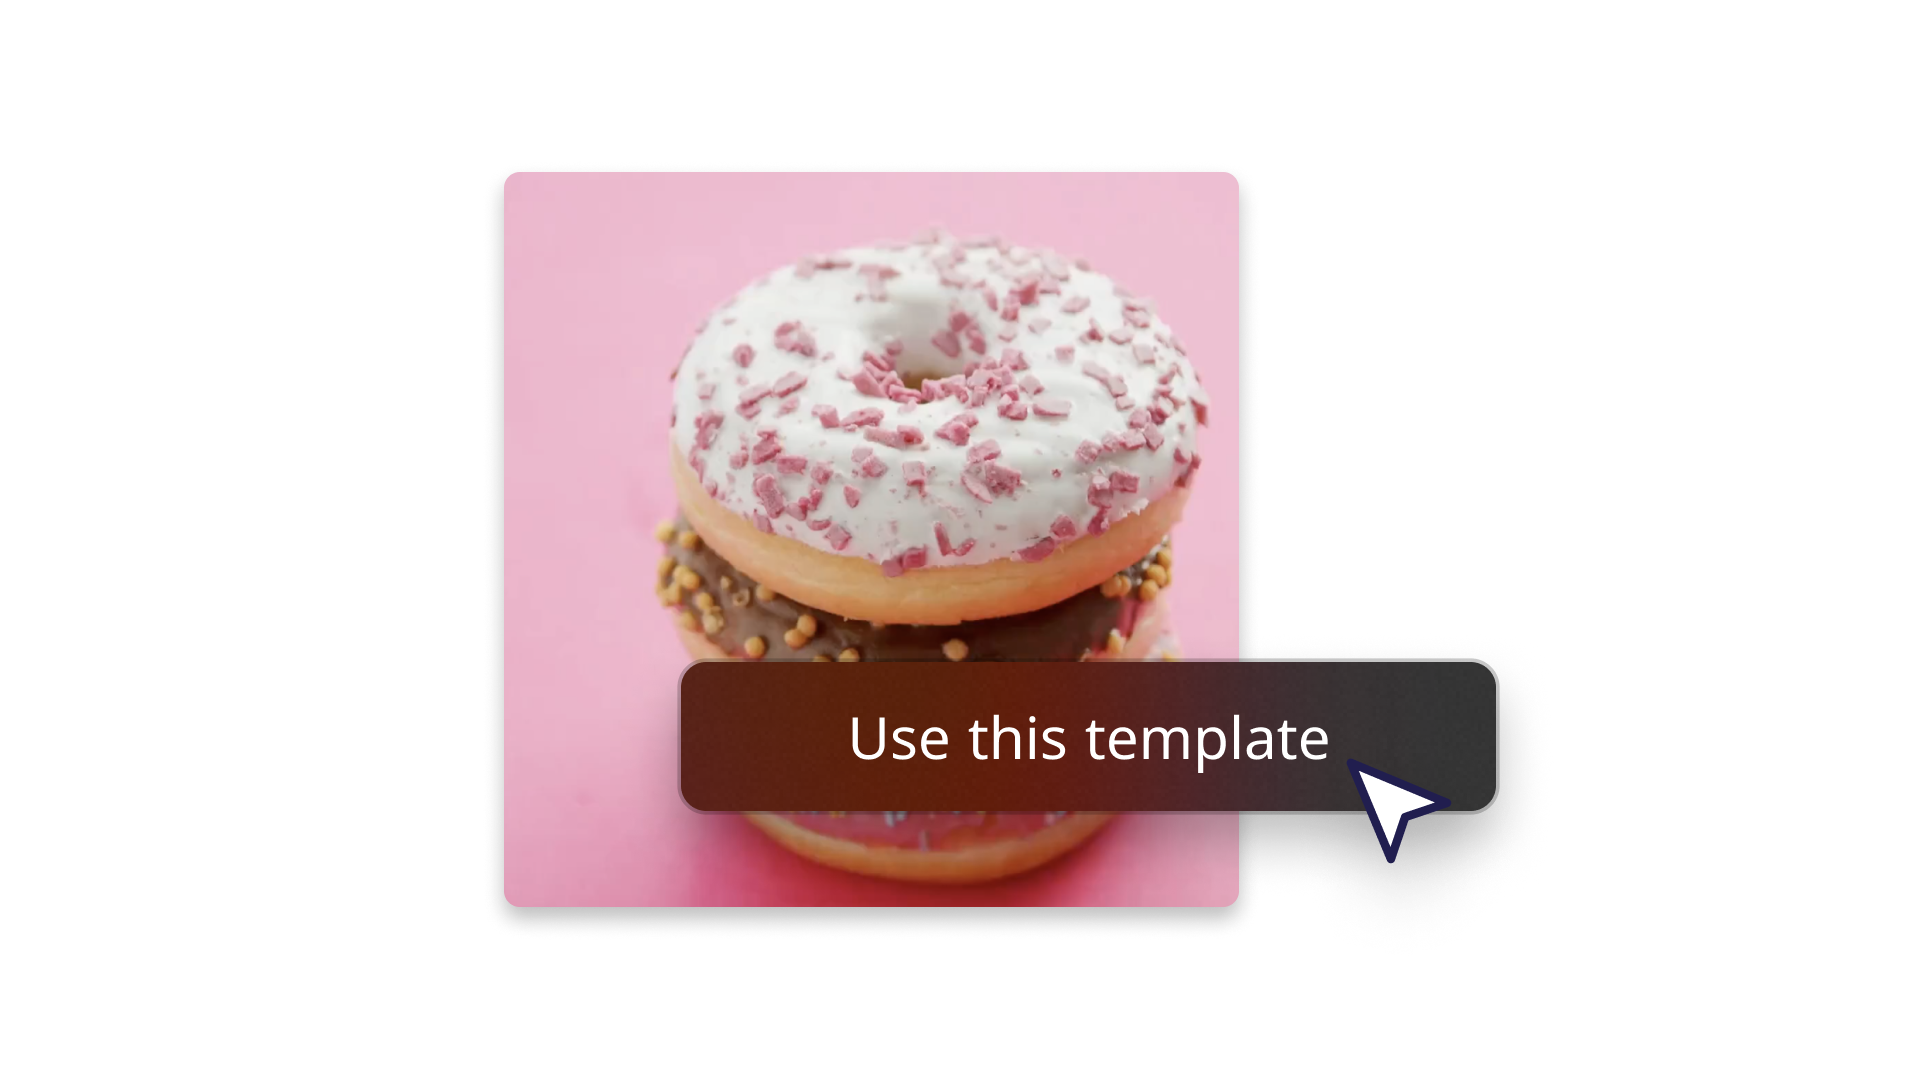 Абстрактное фото пончика как пример использования шаблона 